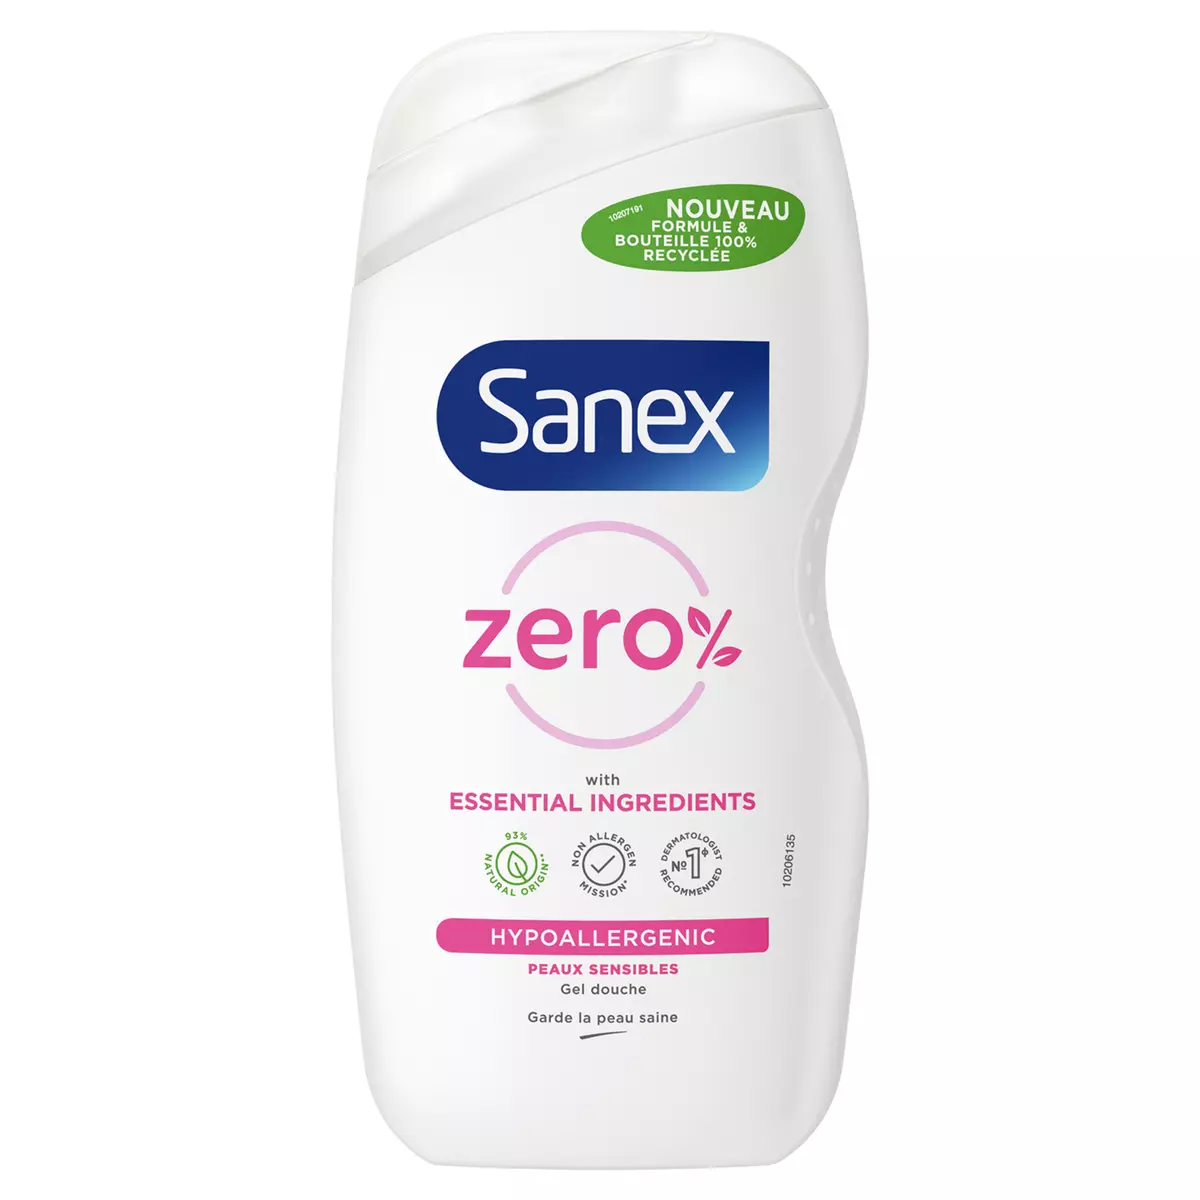 SANEX Zéro% Gel douche hypoallergénique peaux sensibles 475ml